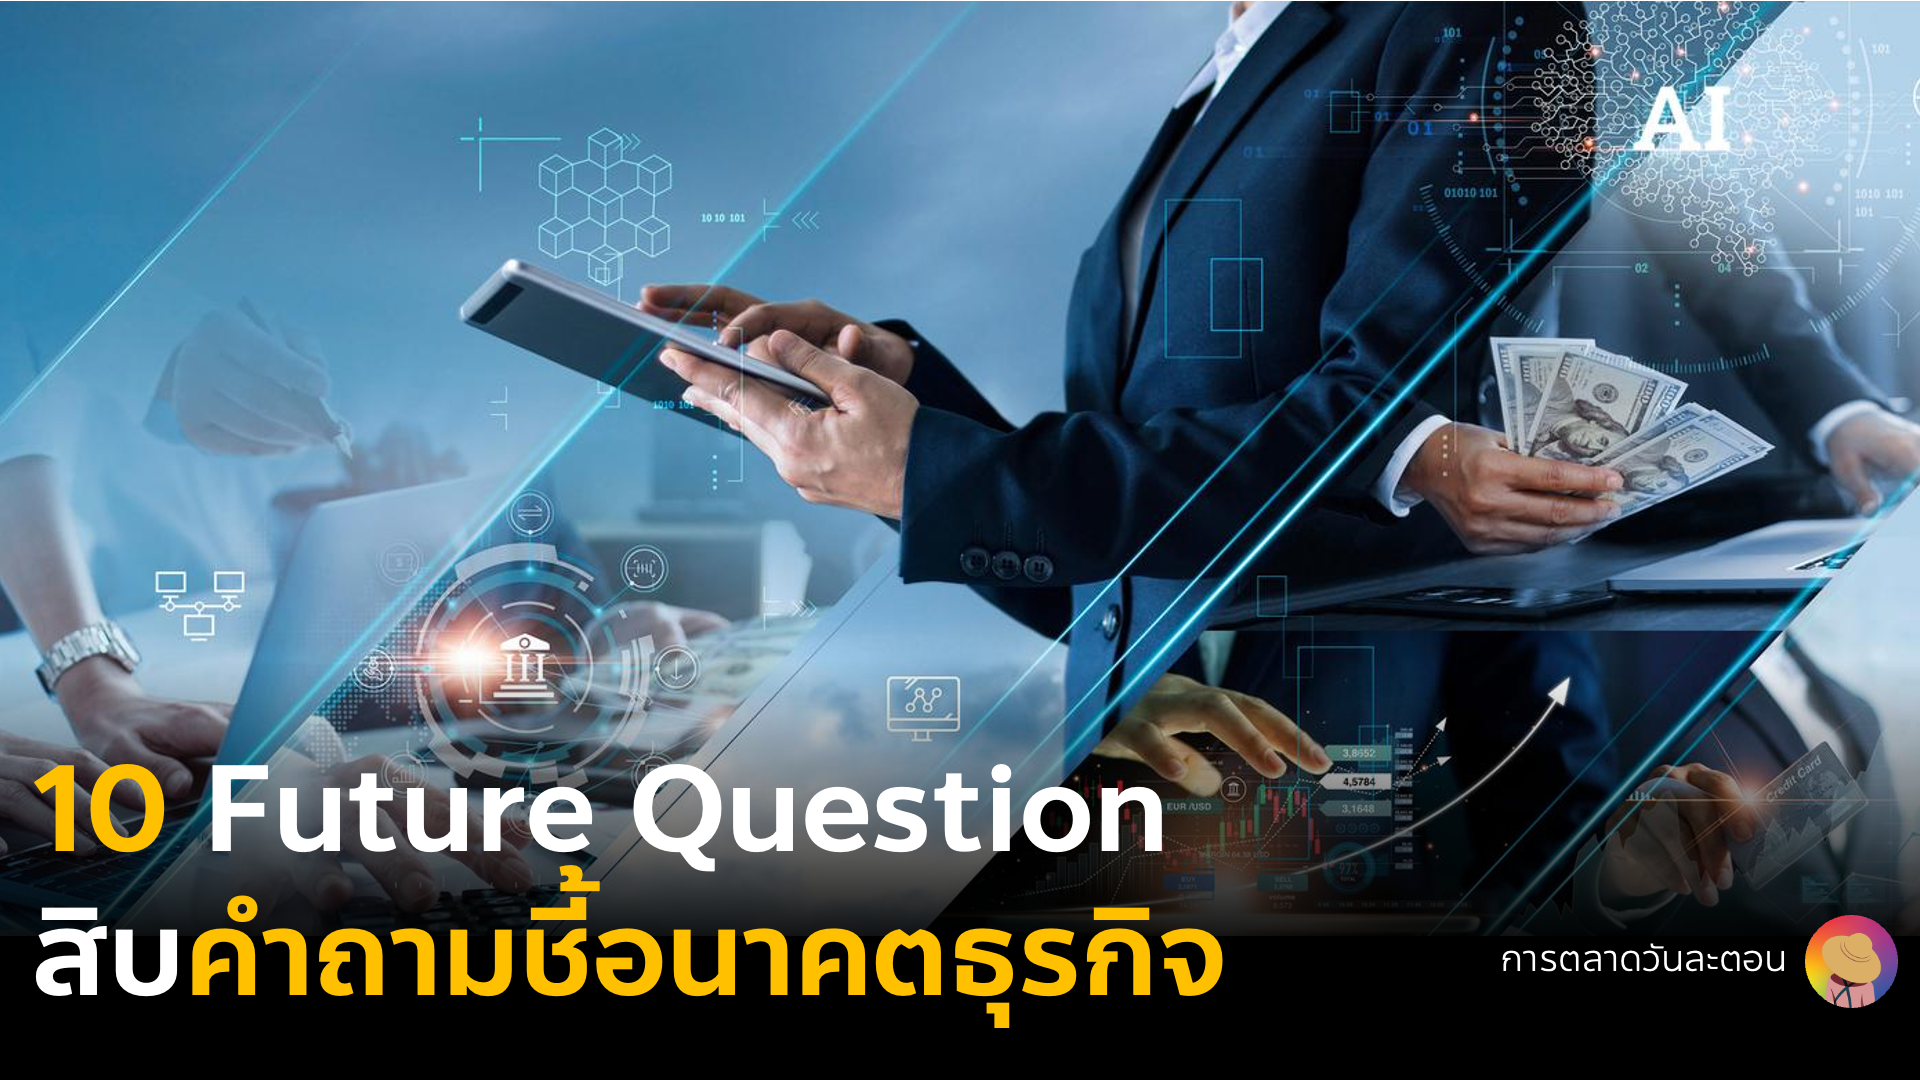 รวม 10 Future Question ชี้อนาคตธุรกิจ จากการกำหนด Business Vision and Mission ที่จะกลายเป็น Business & Marketing Strategy